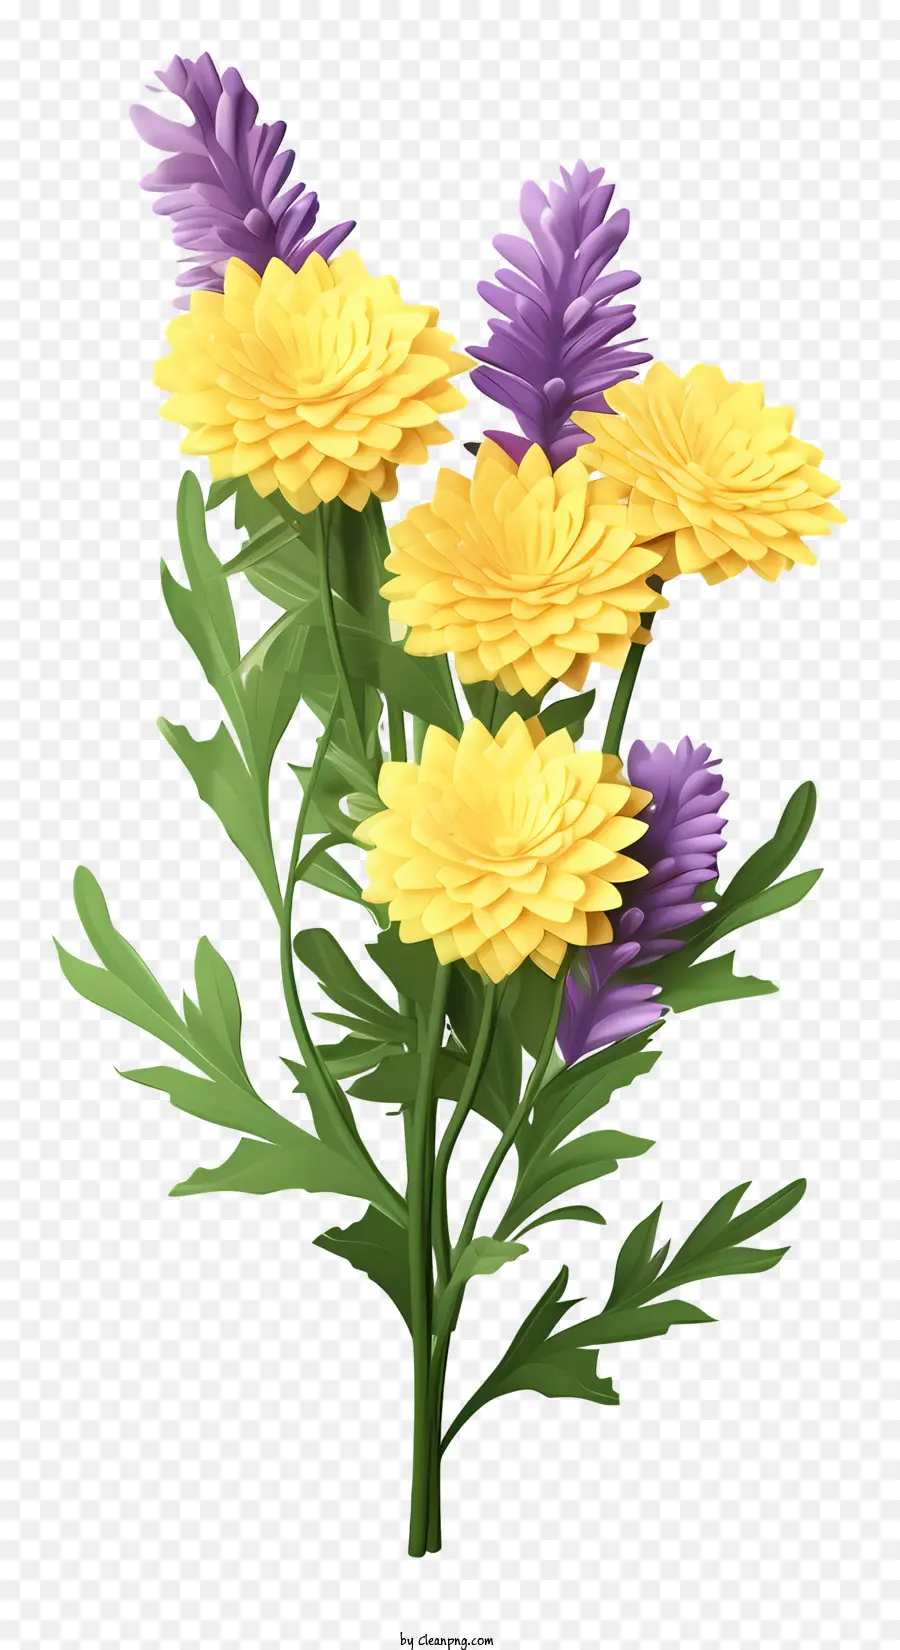 Gesteck - Lebendiger Bouquet aus gelben und lila Blüten